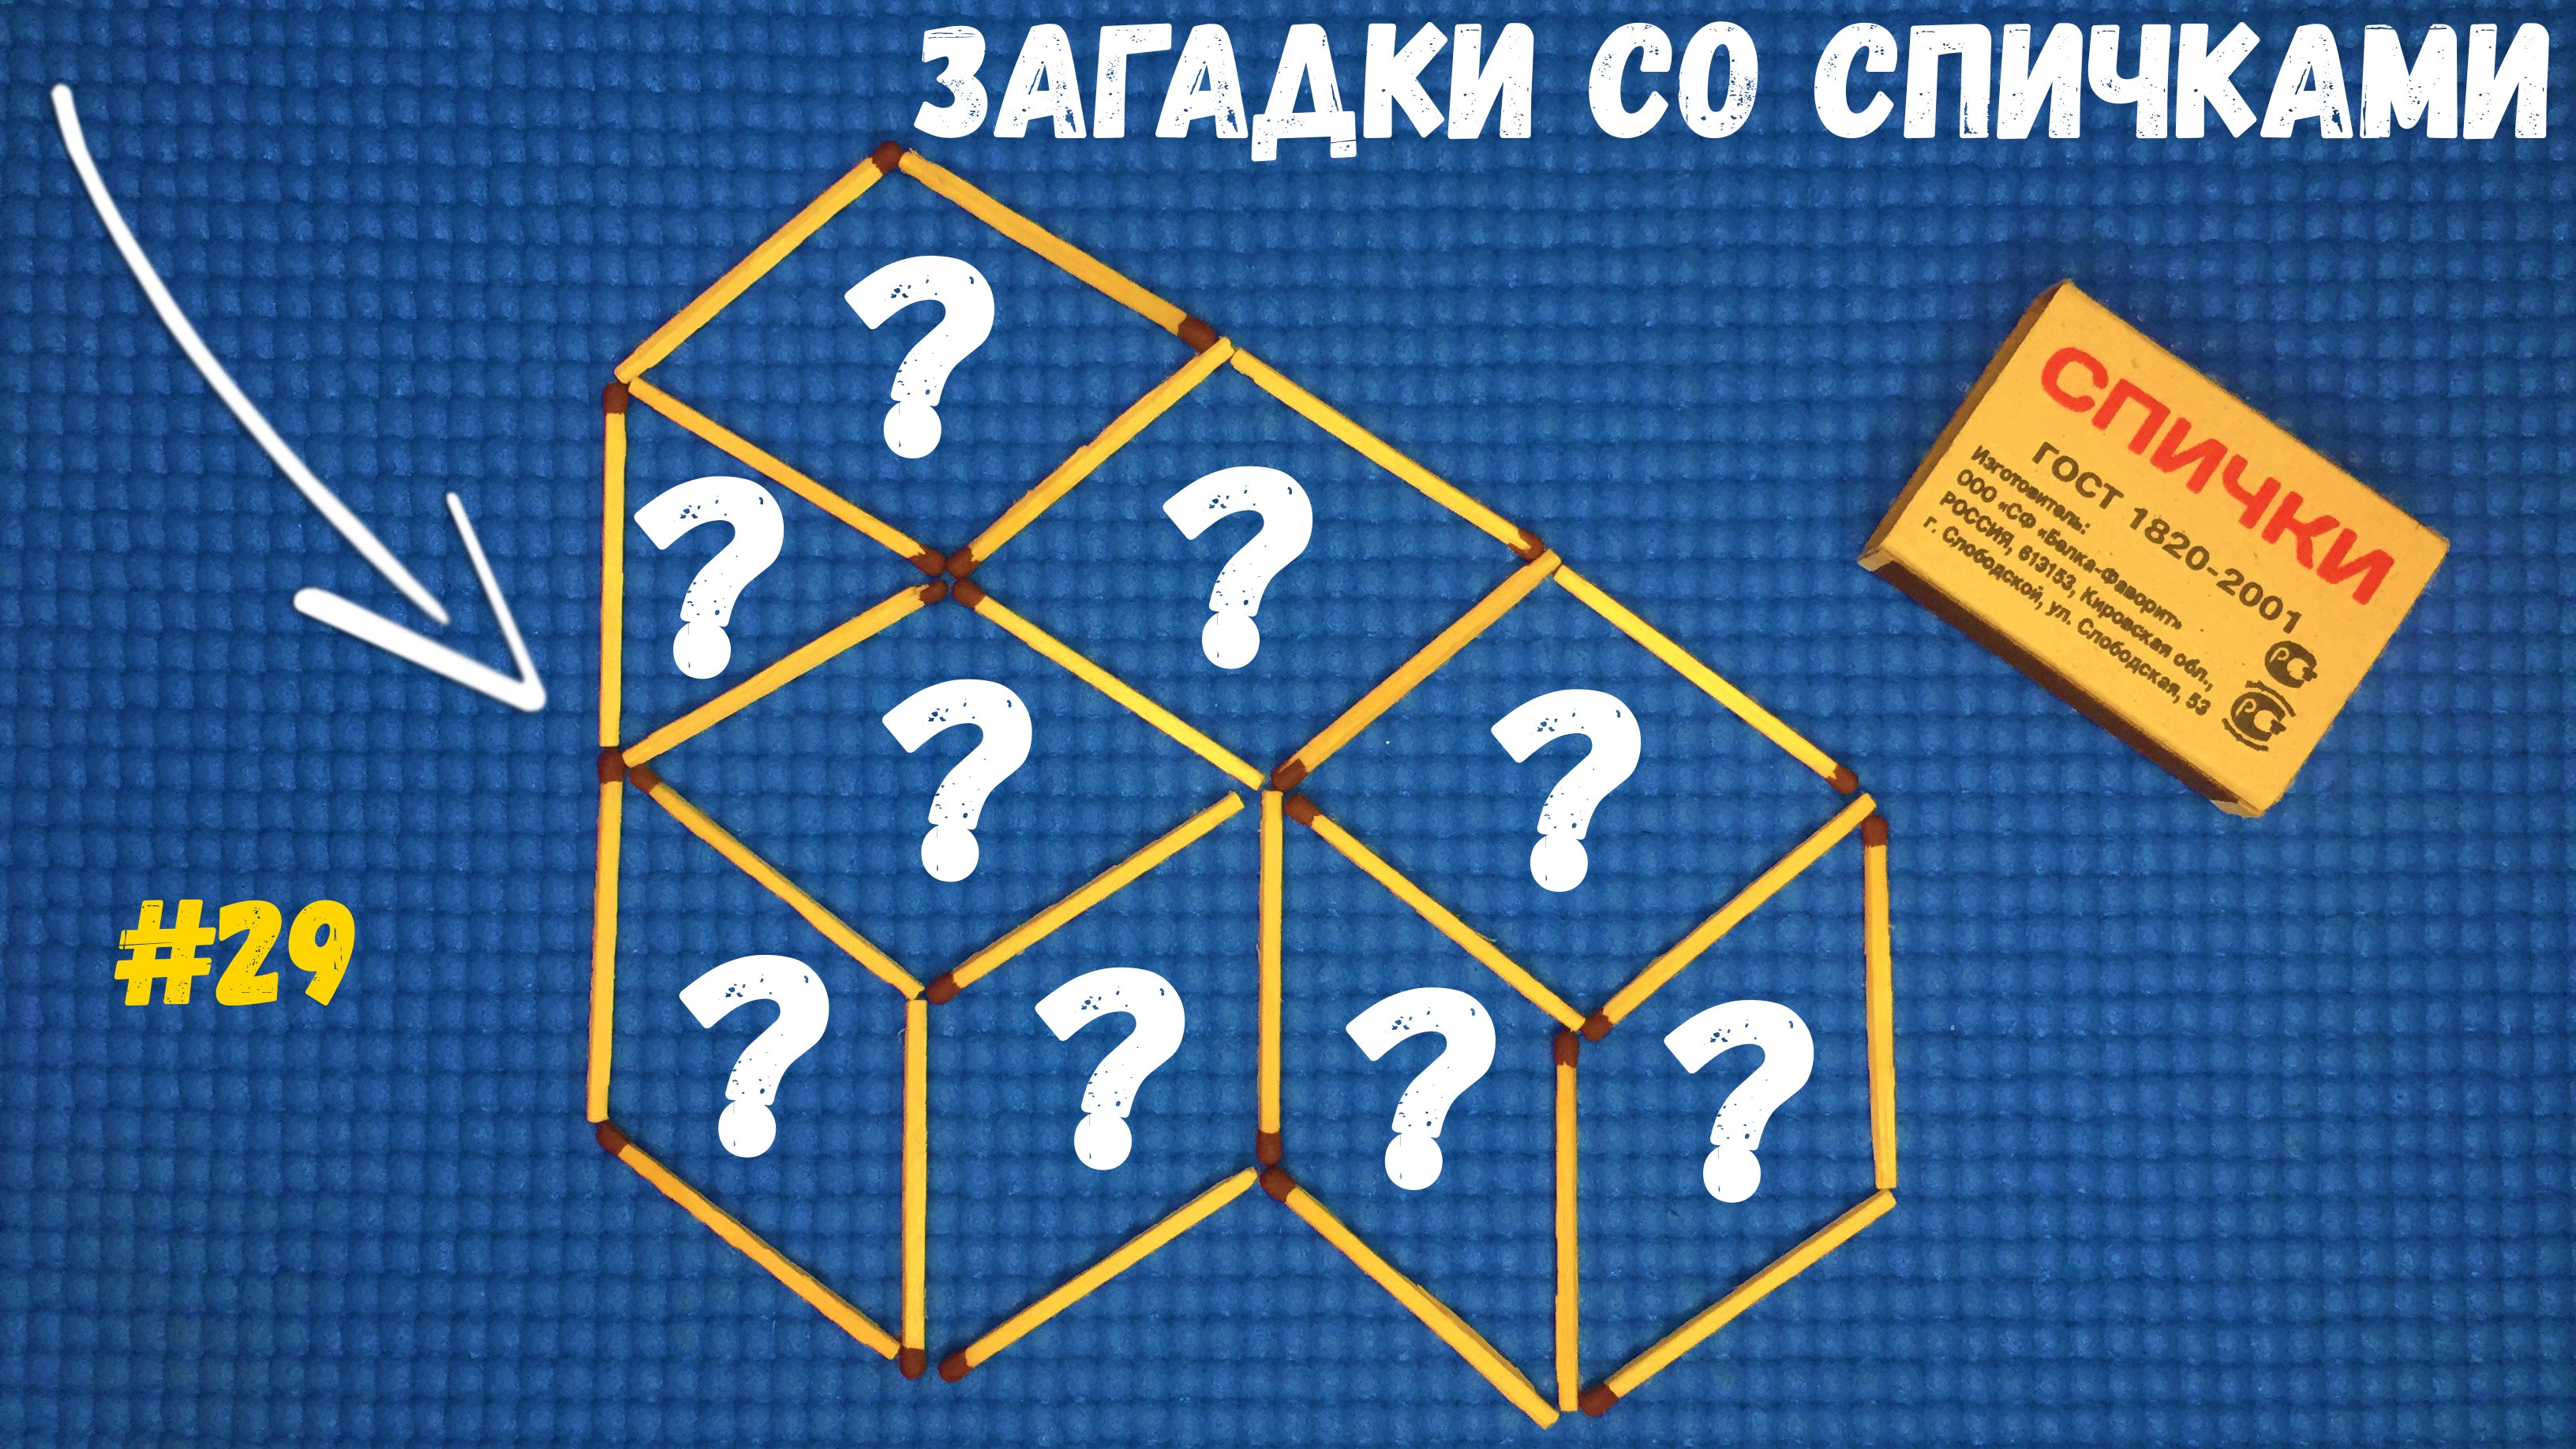 Загадки со спичками #29 - Переложите 1 спичку, чтобы получилось 3 куба